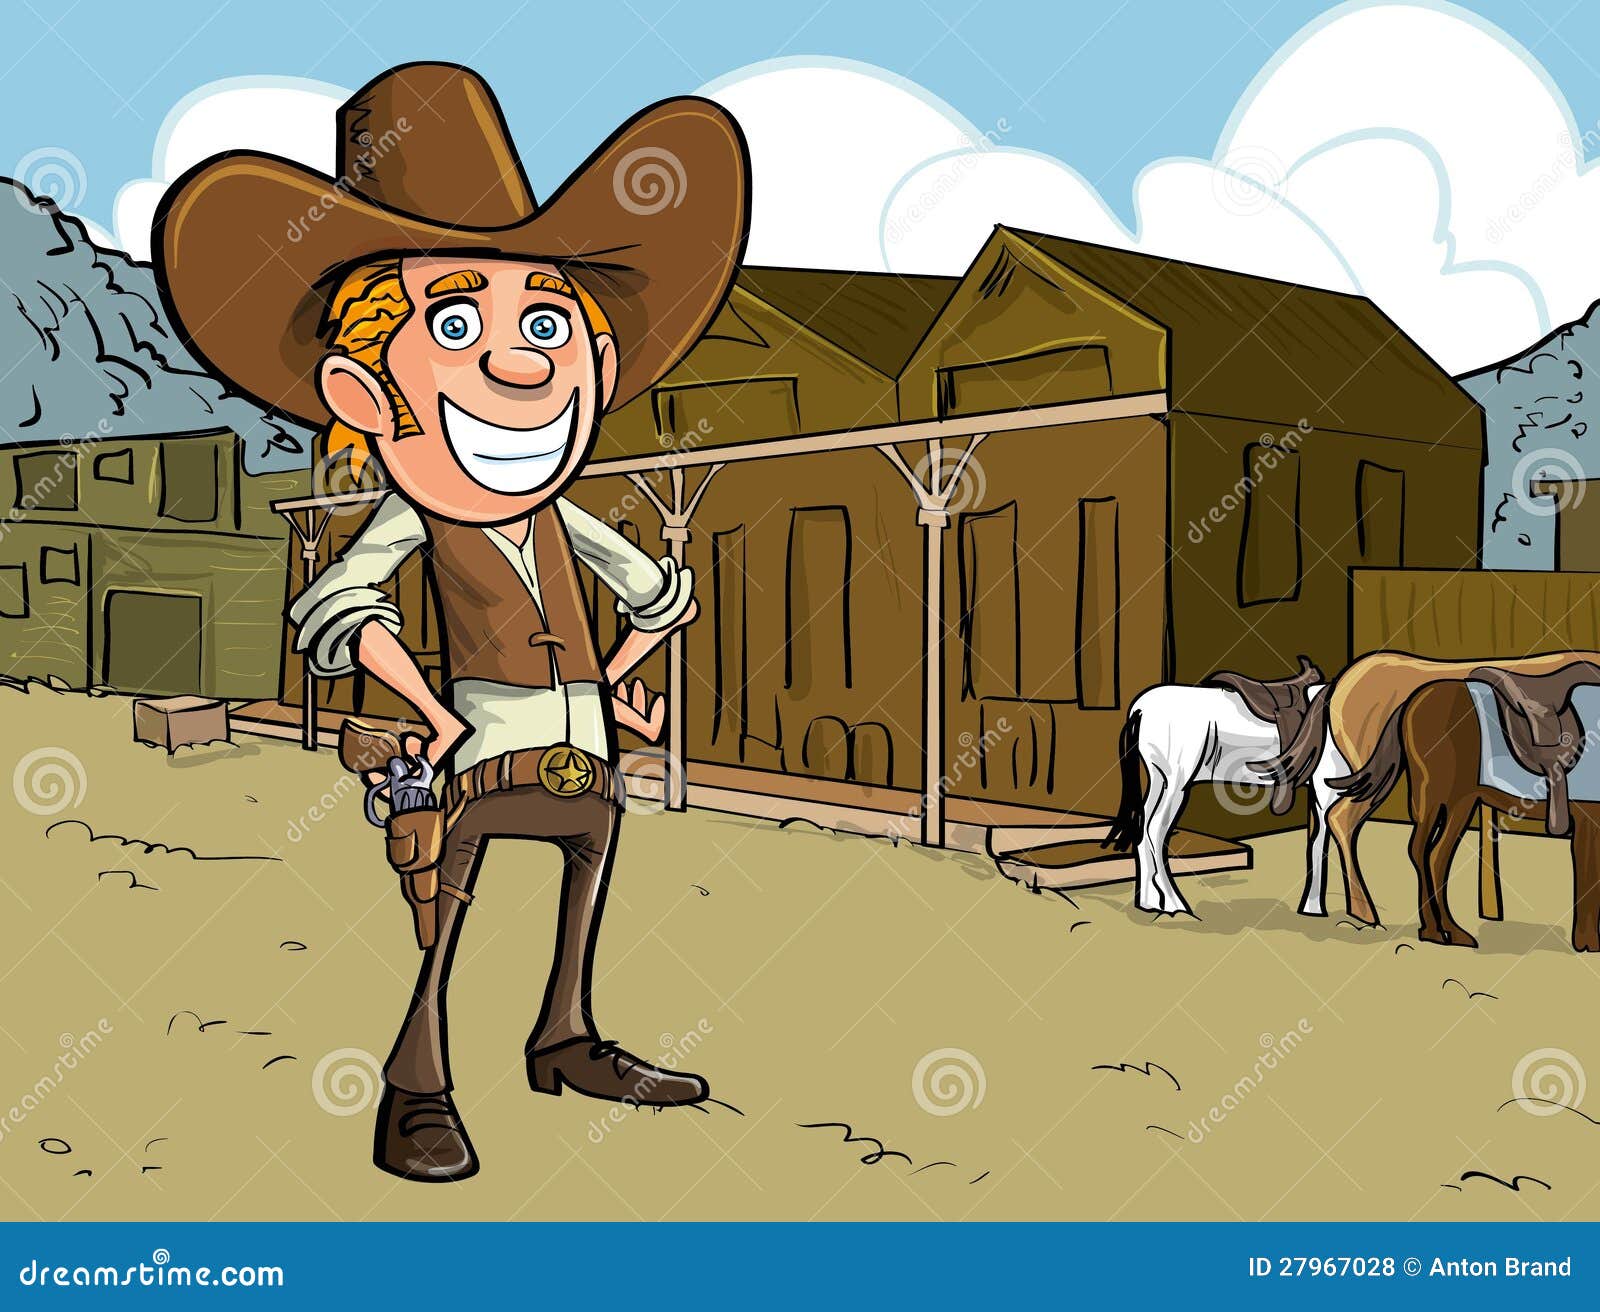 cartoon cowboy with sixgun